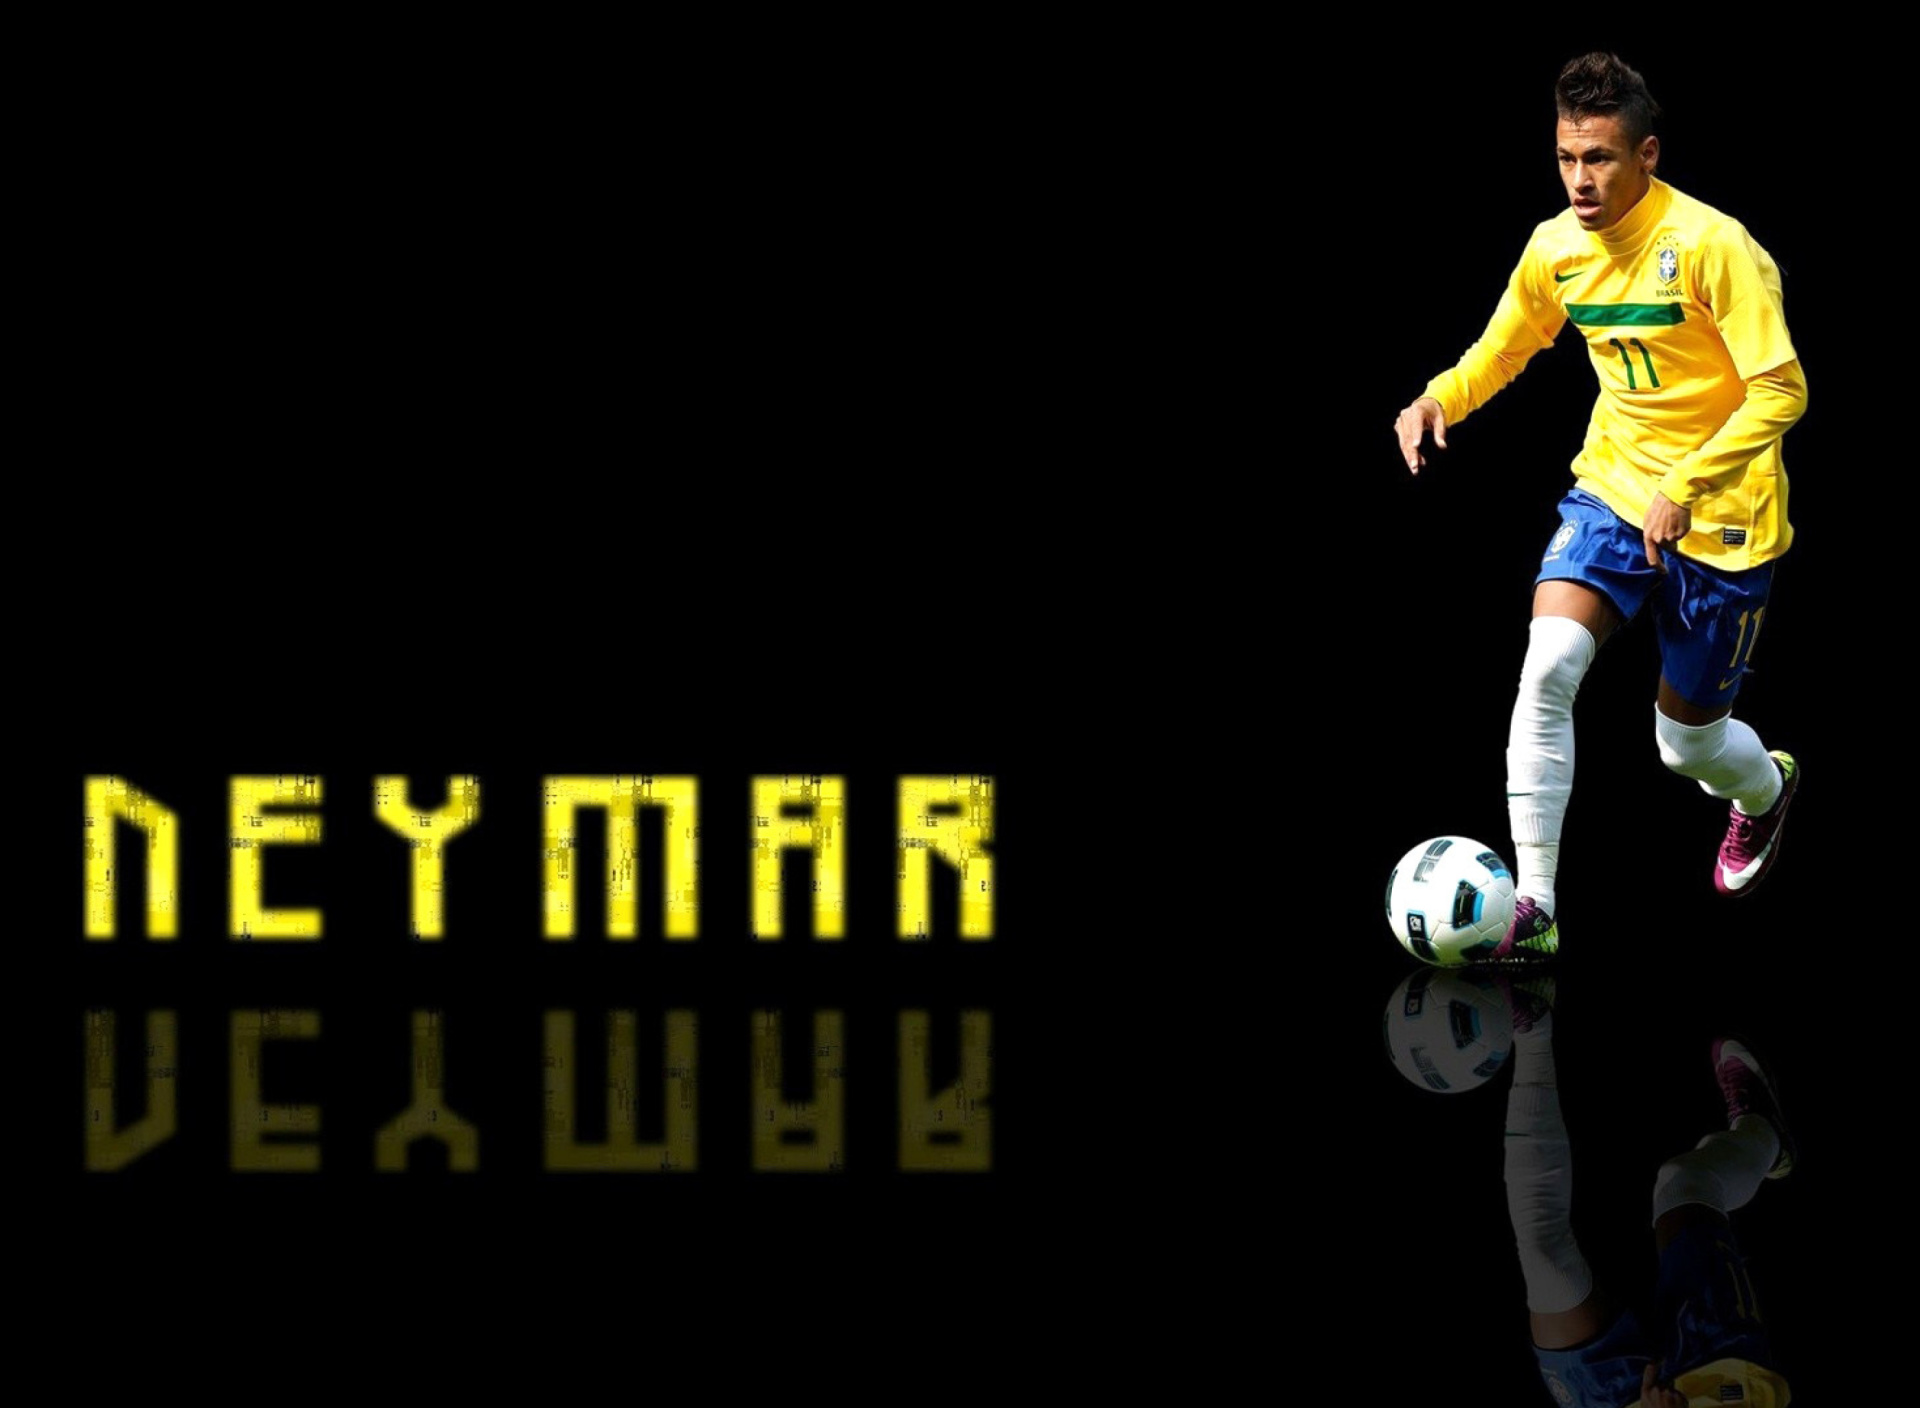 Das Neymar Brazilian Professional Footballer Wallpaper 1920x1408